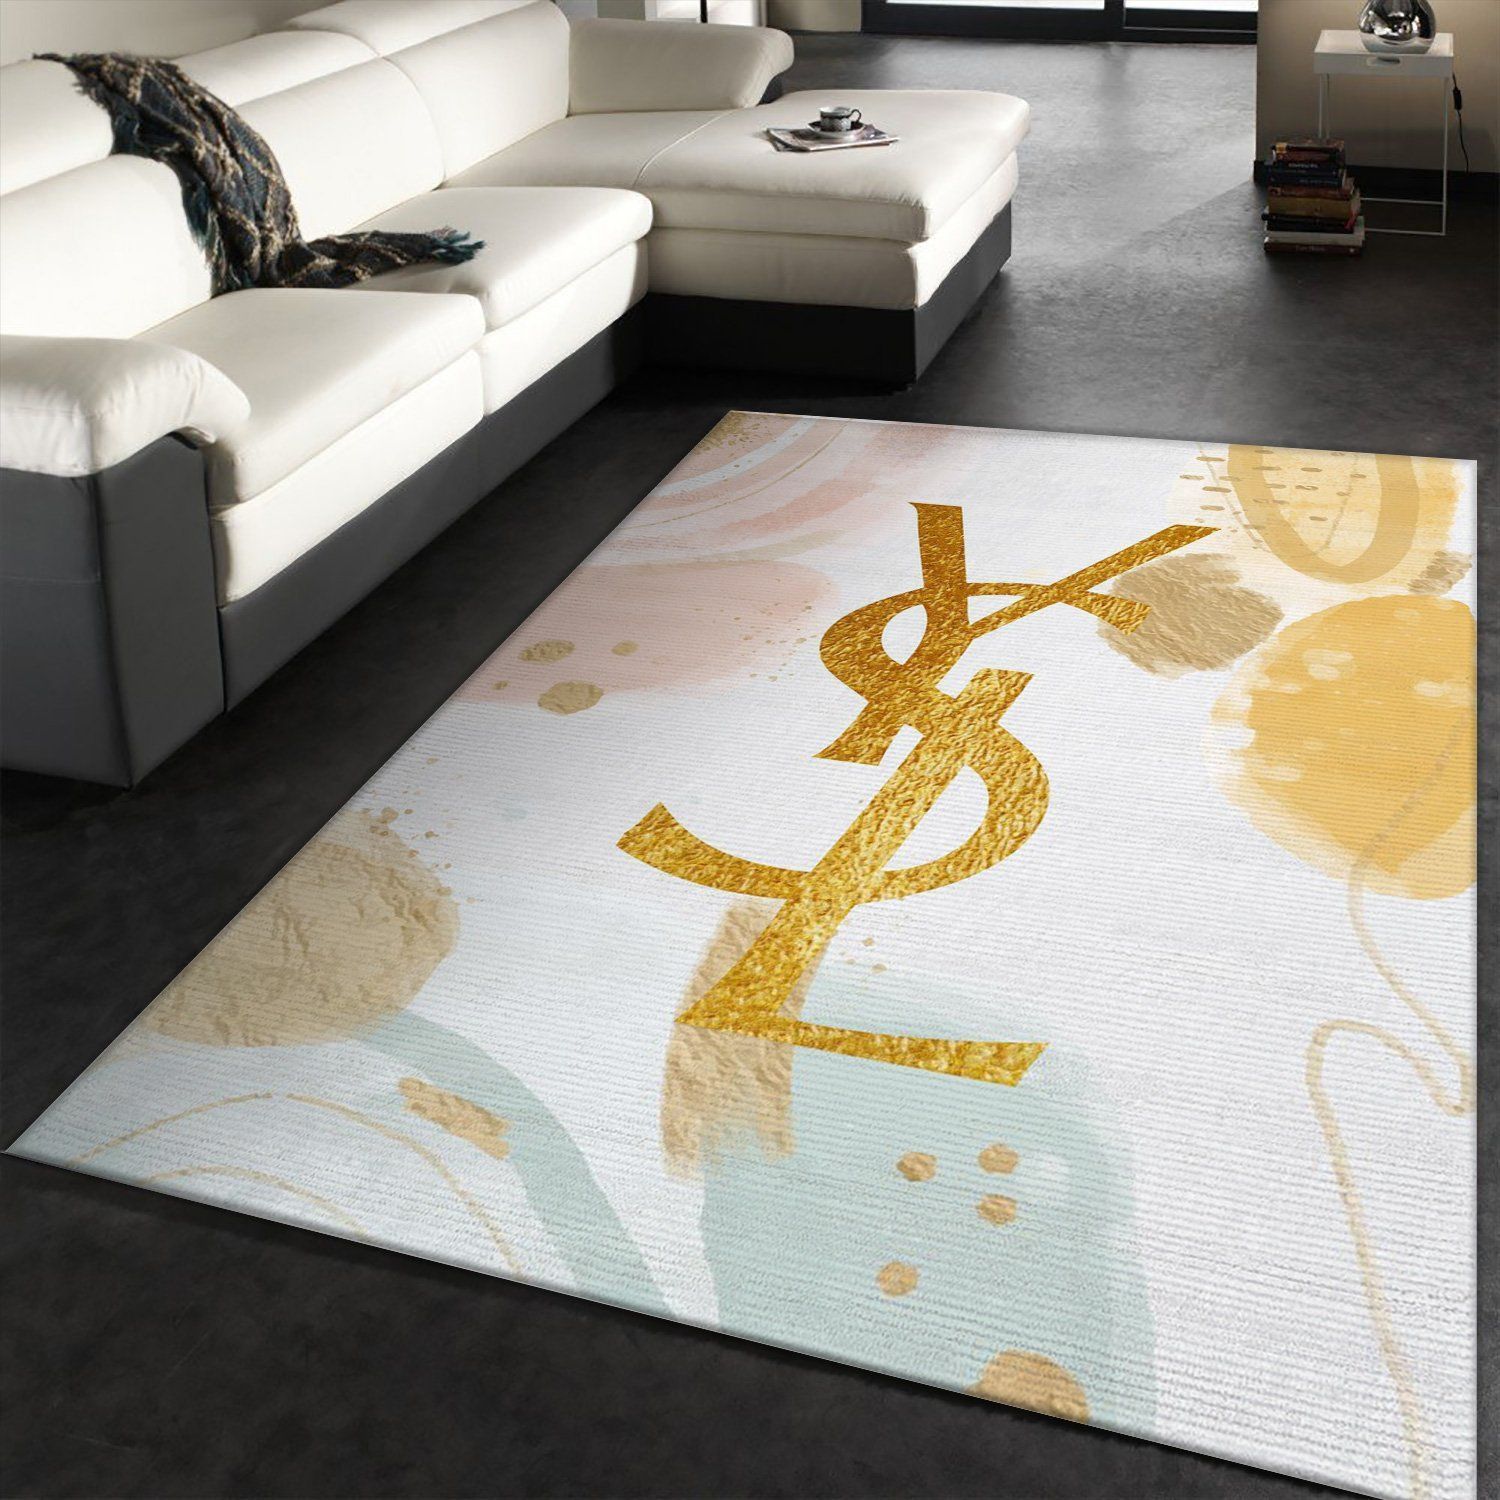 Ysl Yves Saint Lauren Rectangle Rug Bedroom Rug Home Decor Floor Decor - Indoor Outdoor Rugs 1